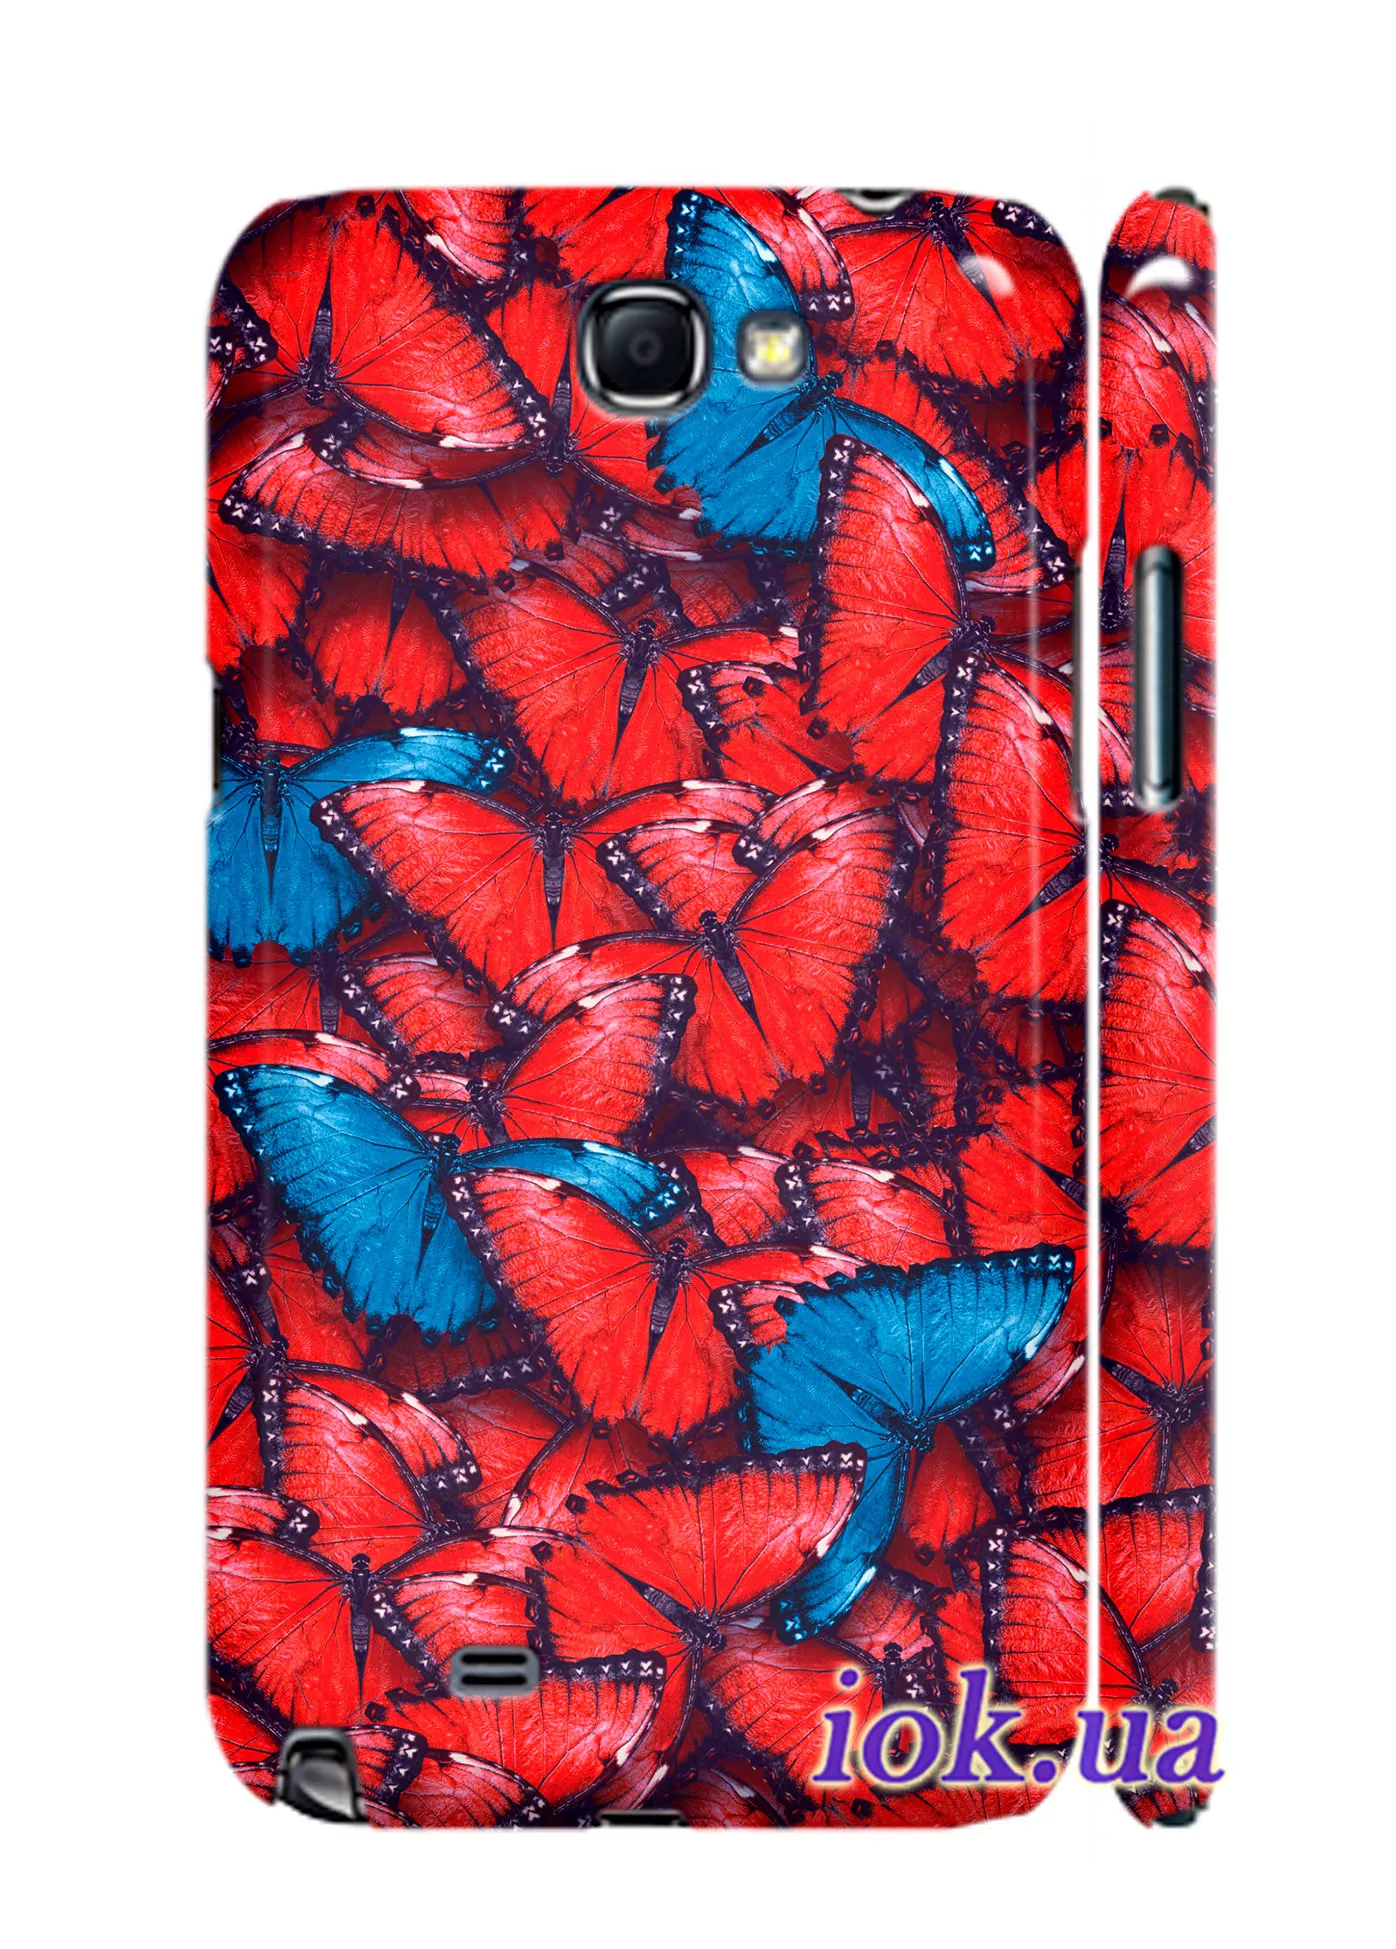 Чехол для Galaxy Note 2 - Butterflies